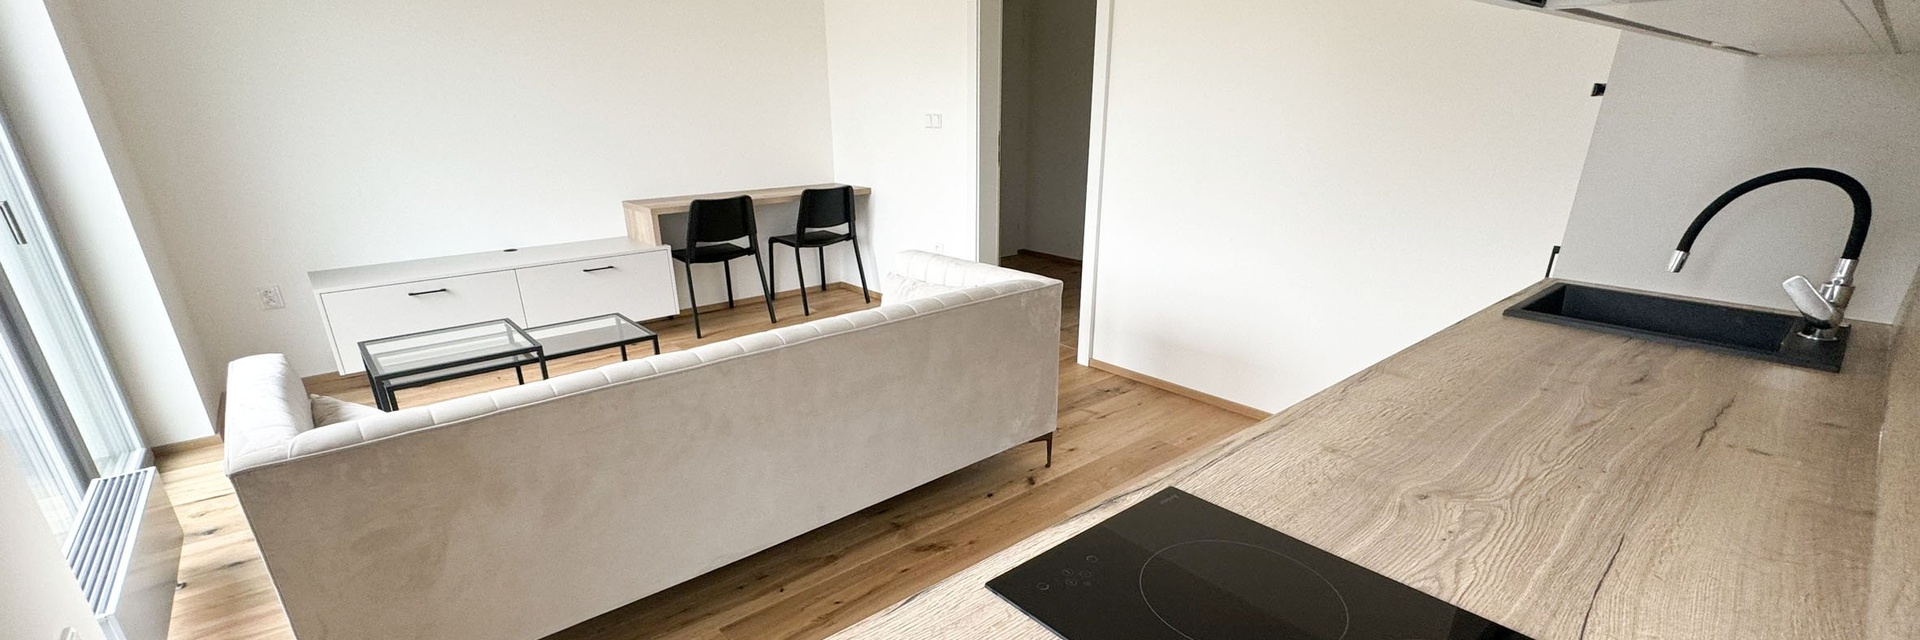 Pronájem zcela nového bytu 2+kk, 39 m² - Brno /ul. Hlinky